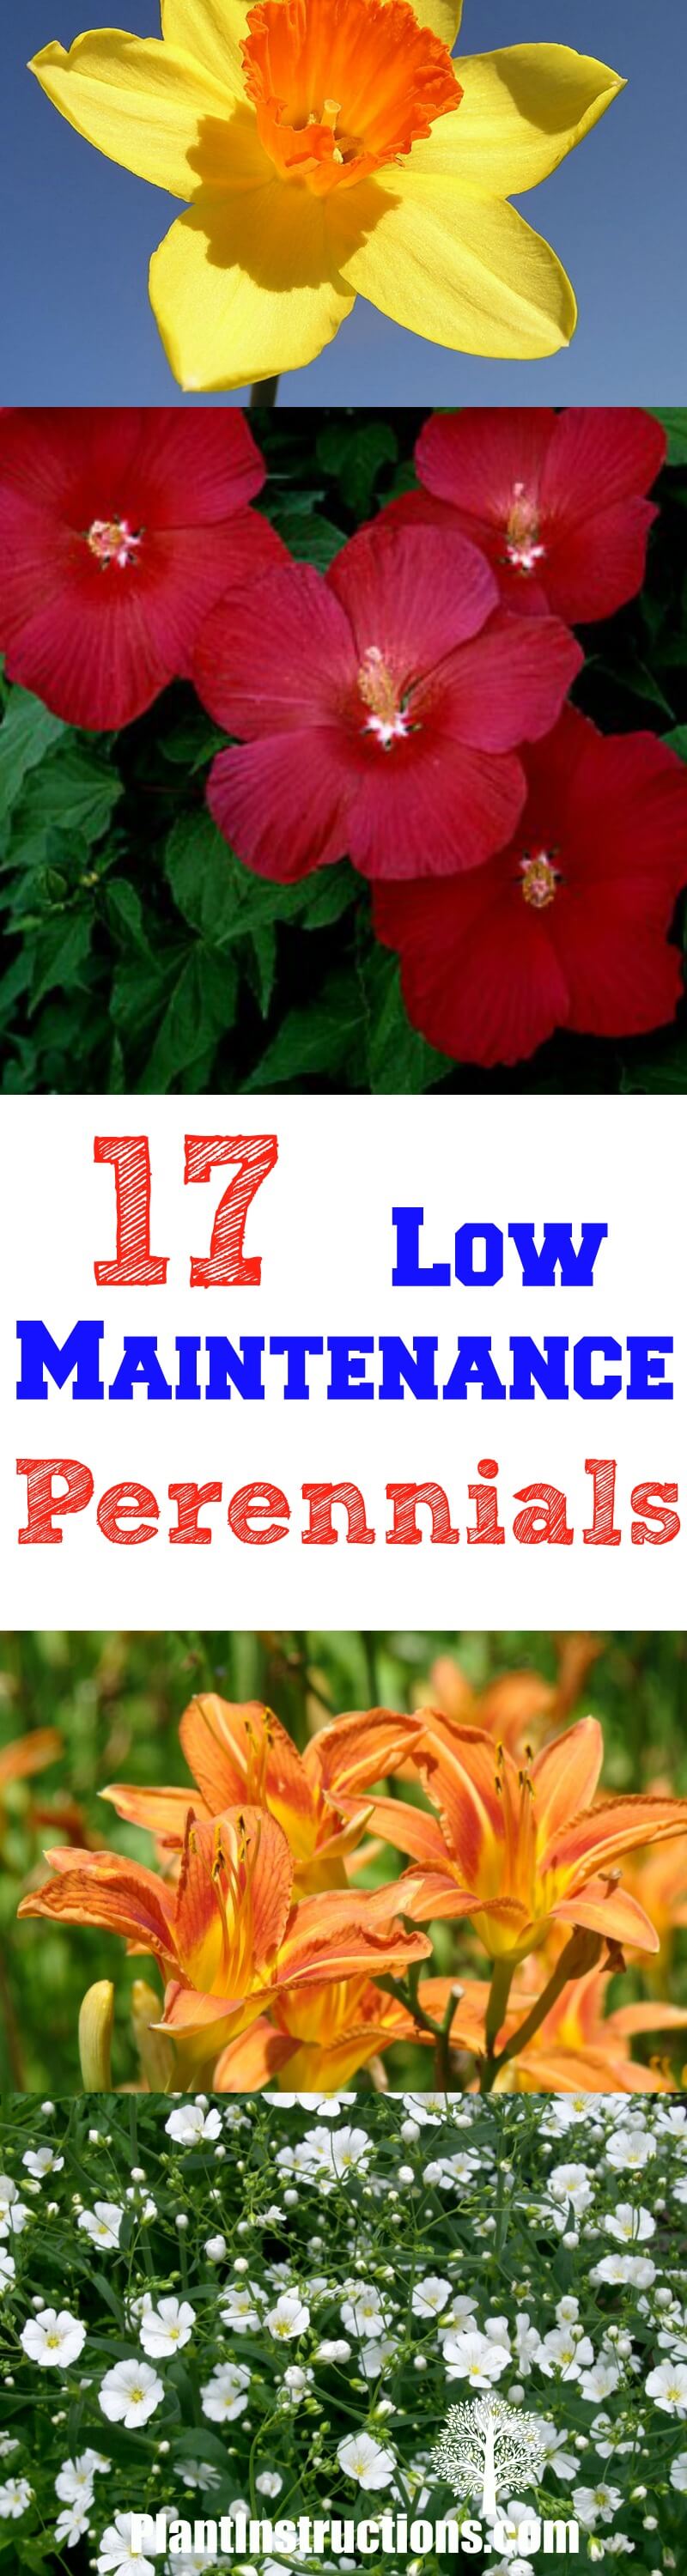 Low Maintenance Perennials